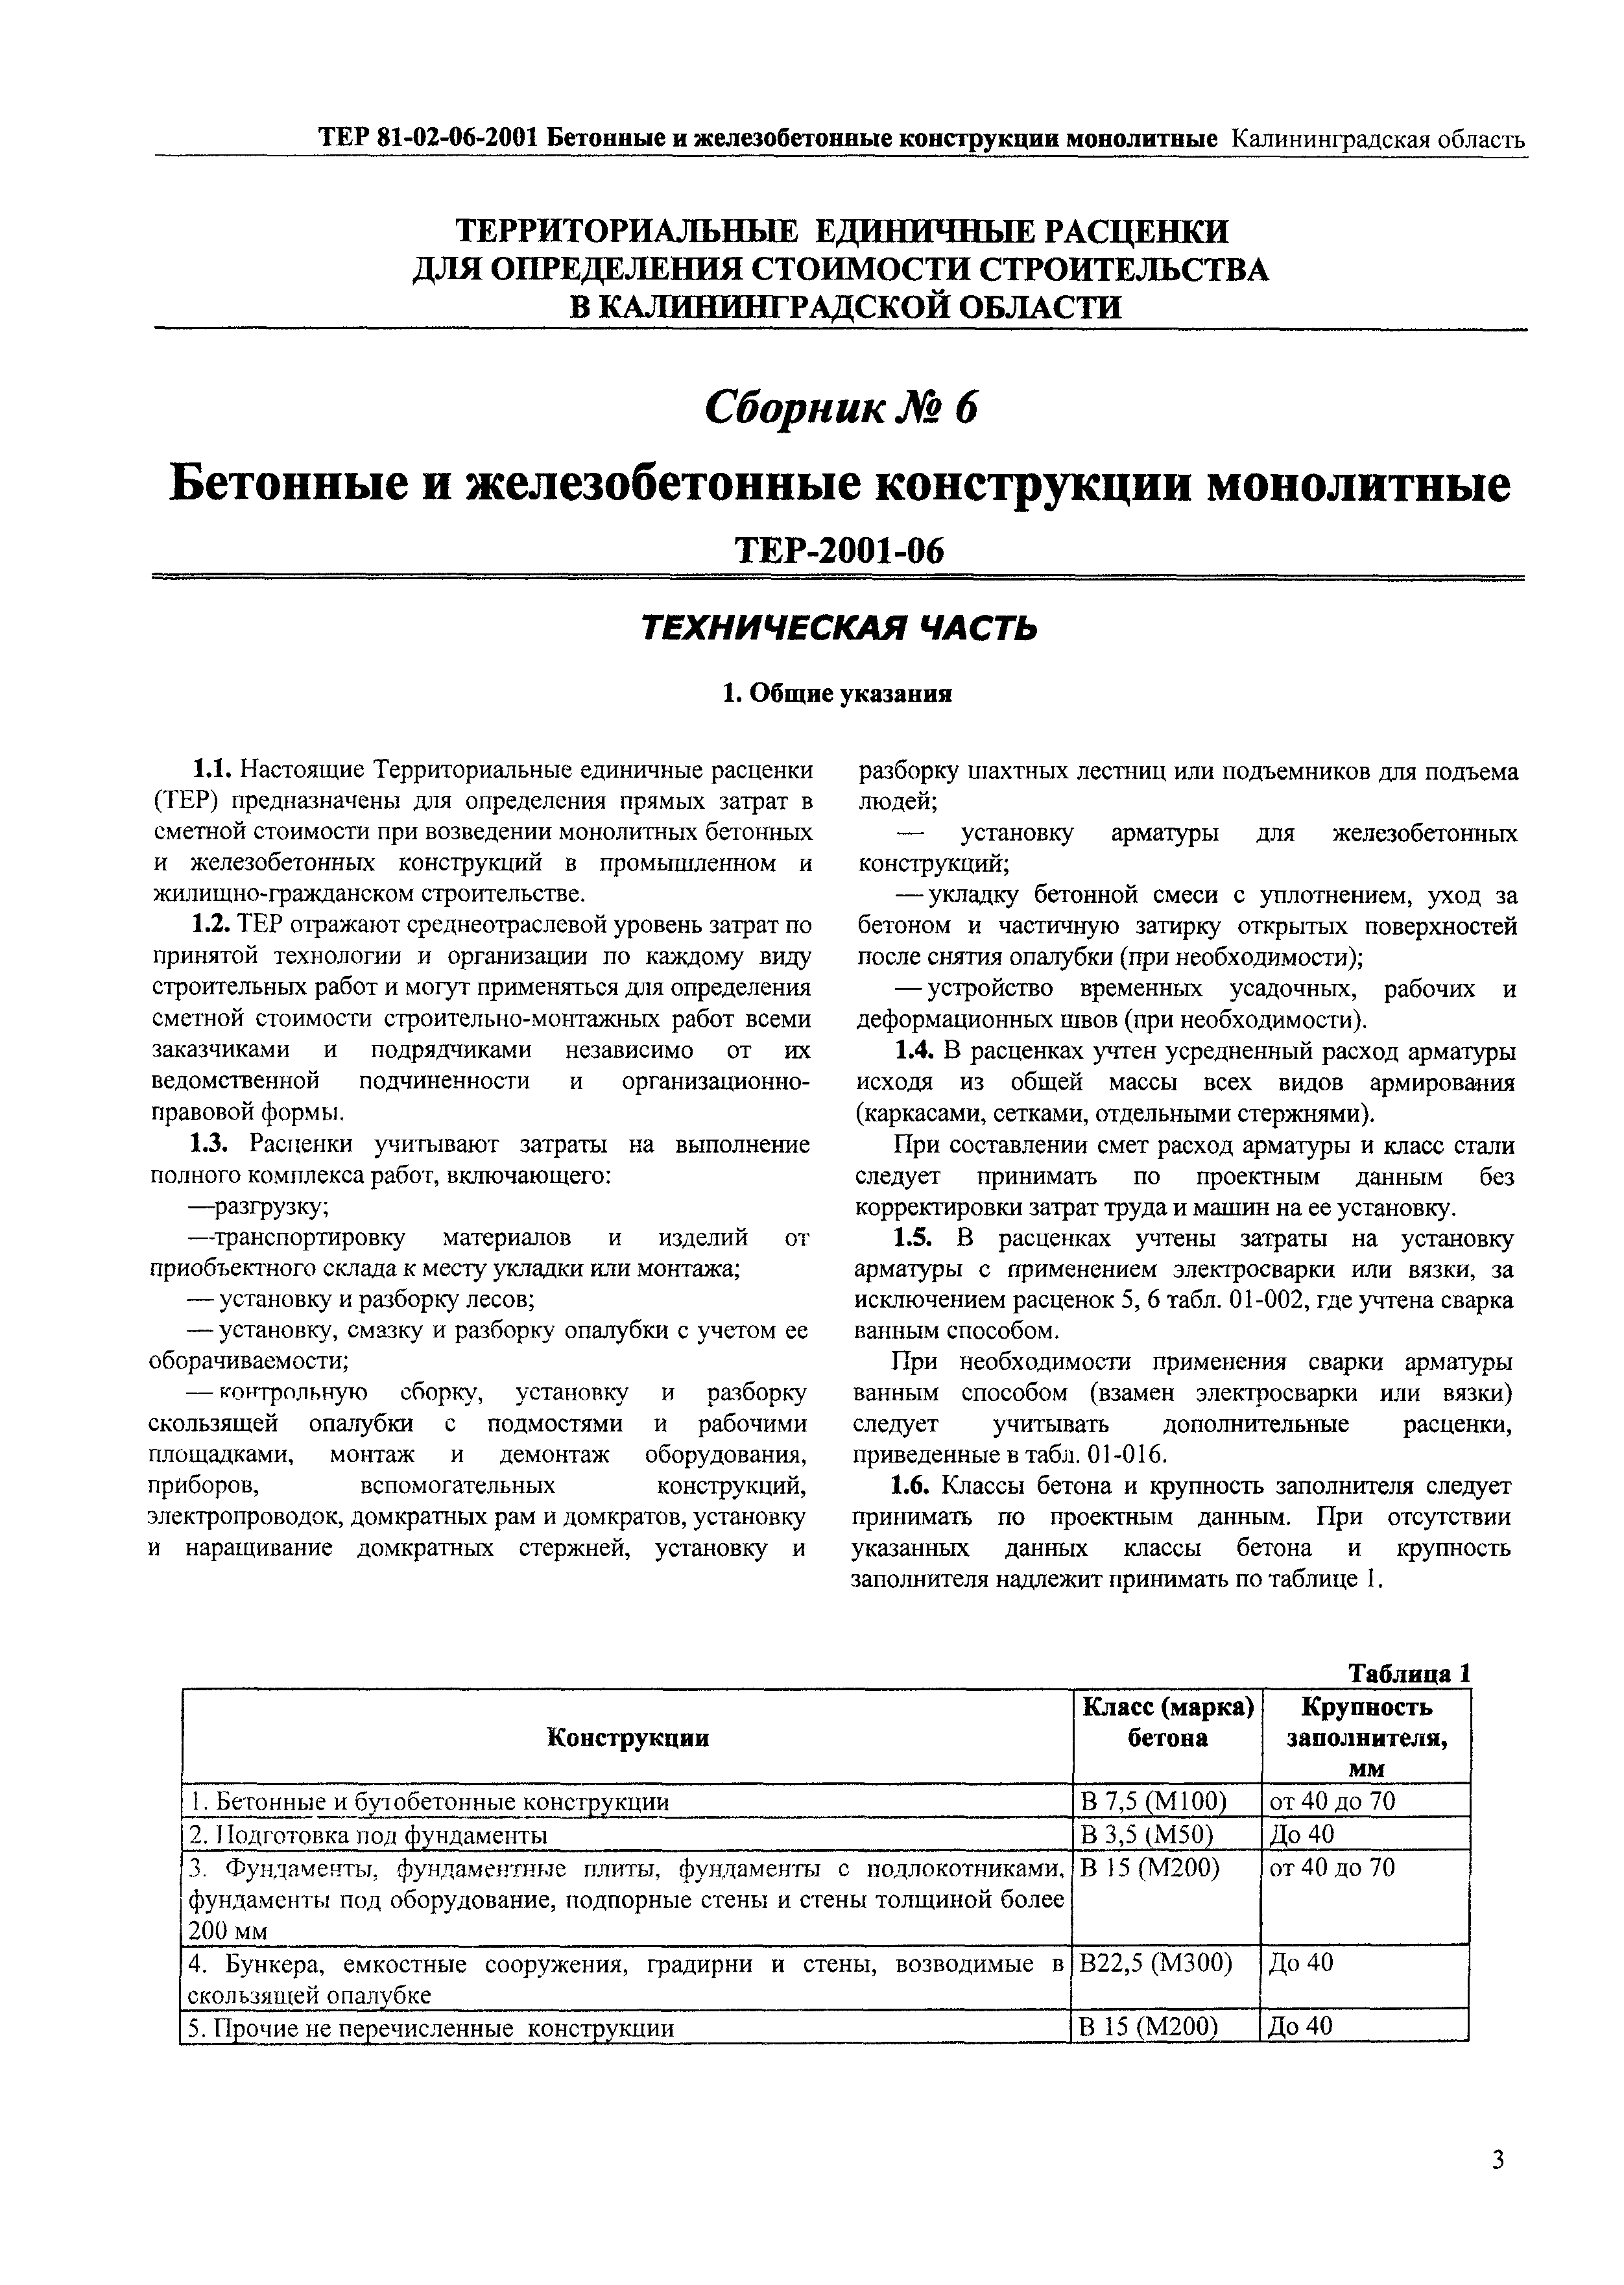 ТЕР Калининградская область 2001-06